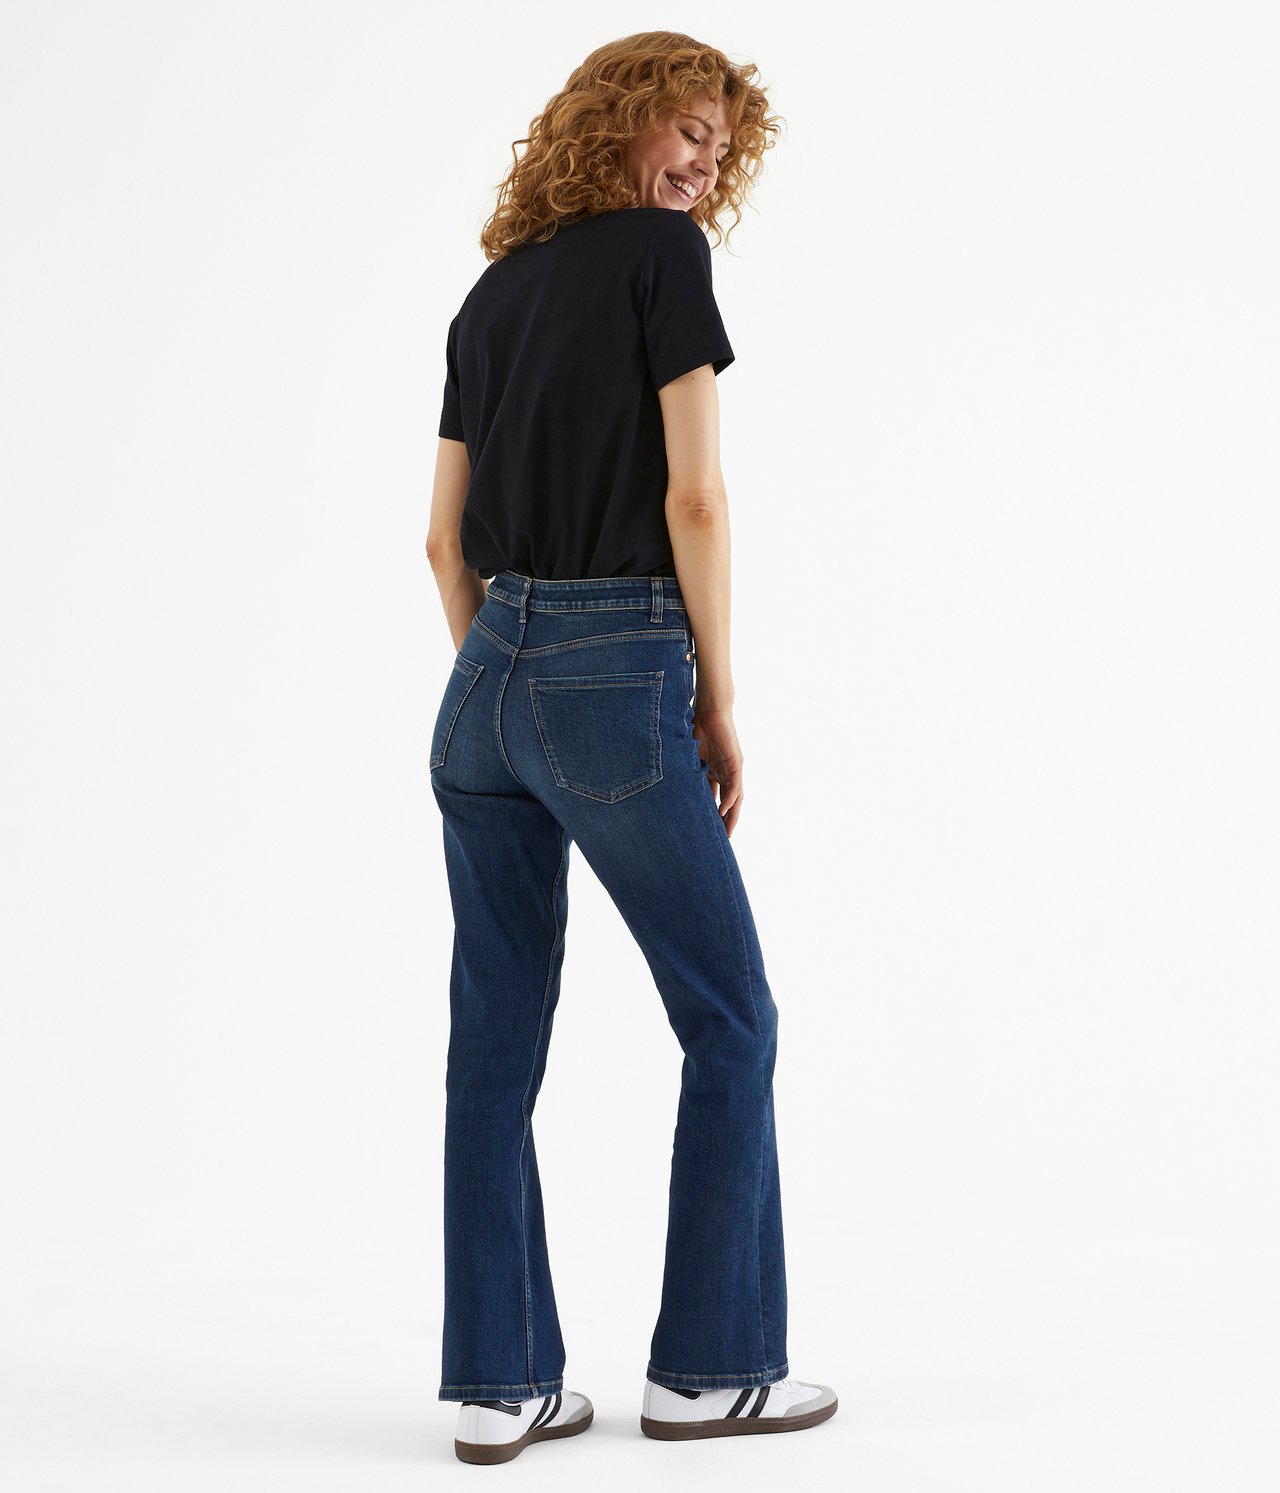 Flare jeans regular waist - Mörk denim - 4